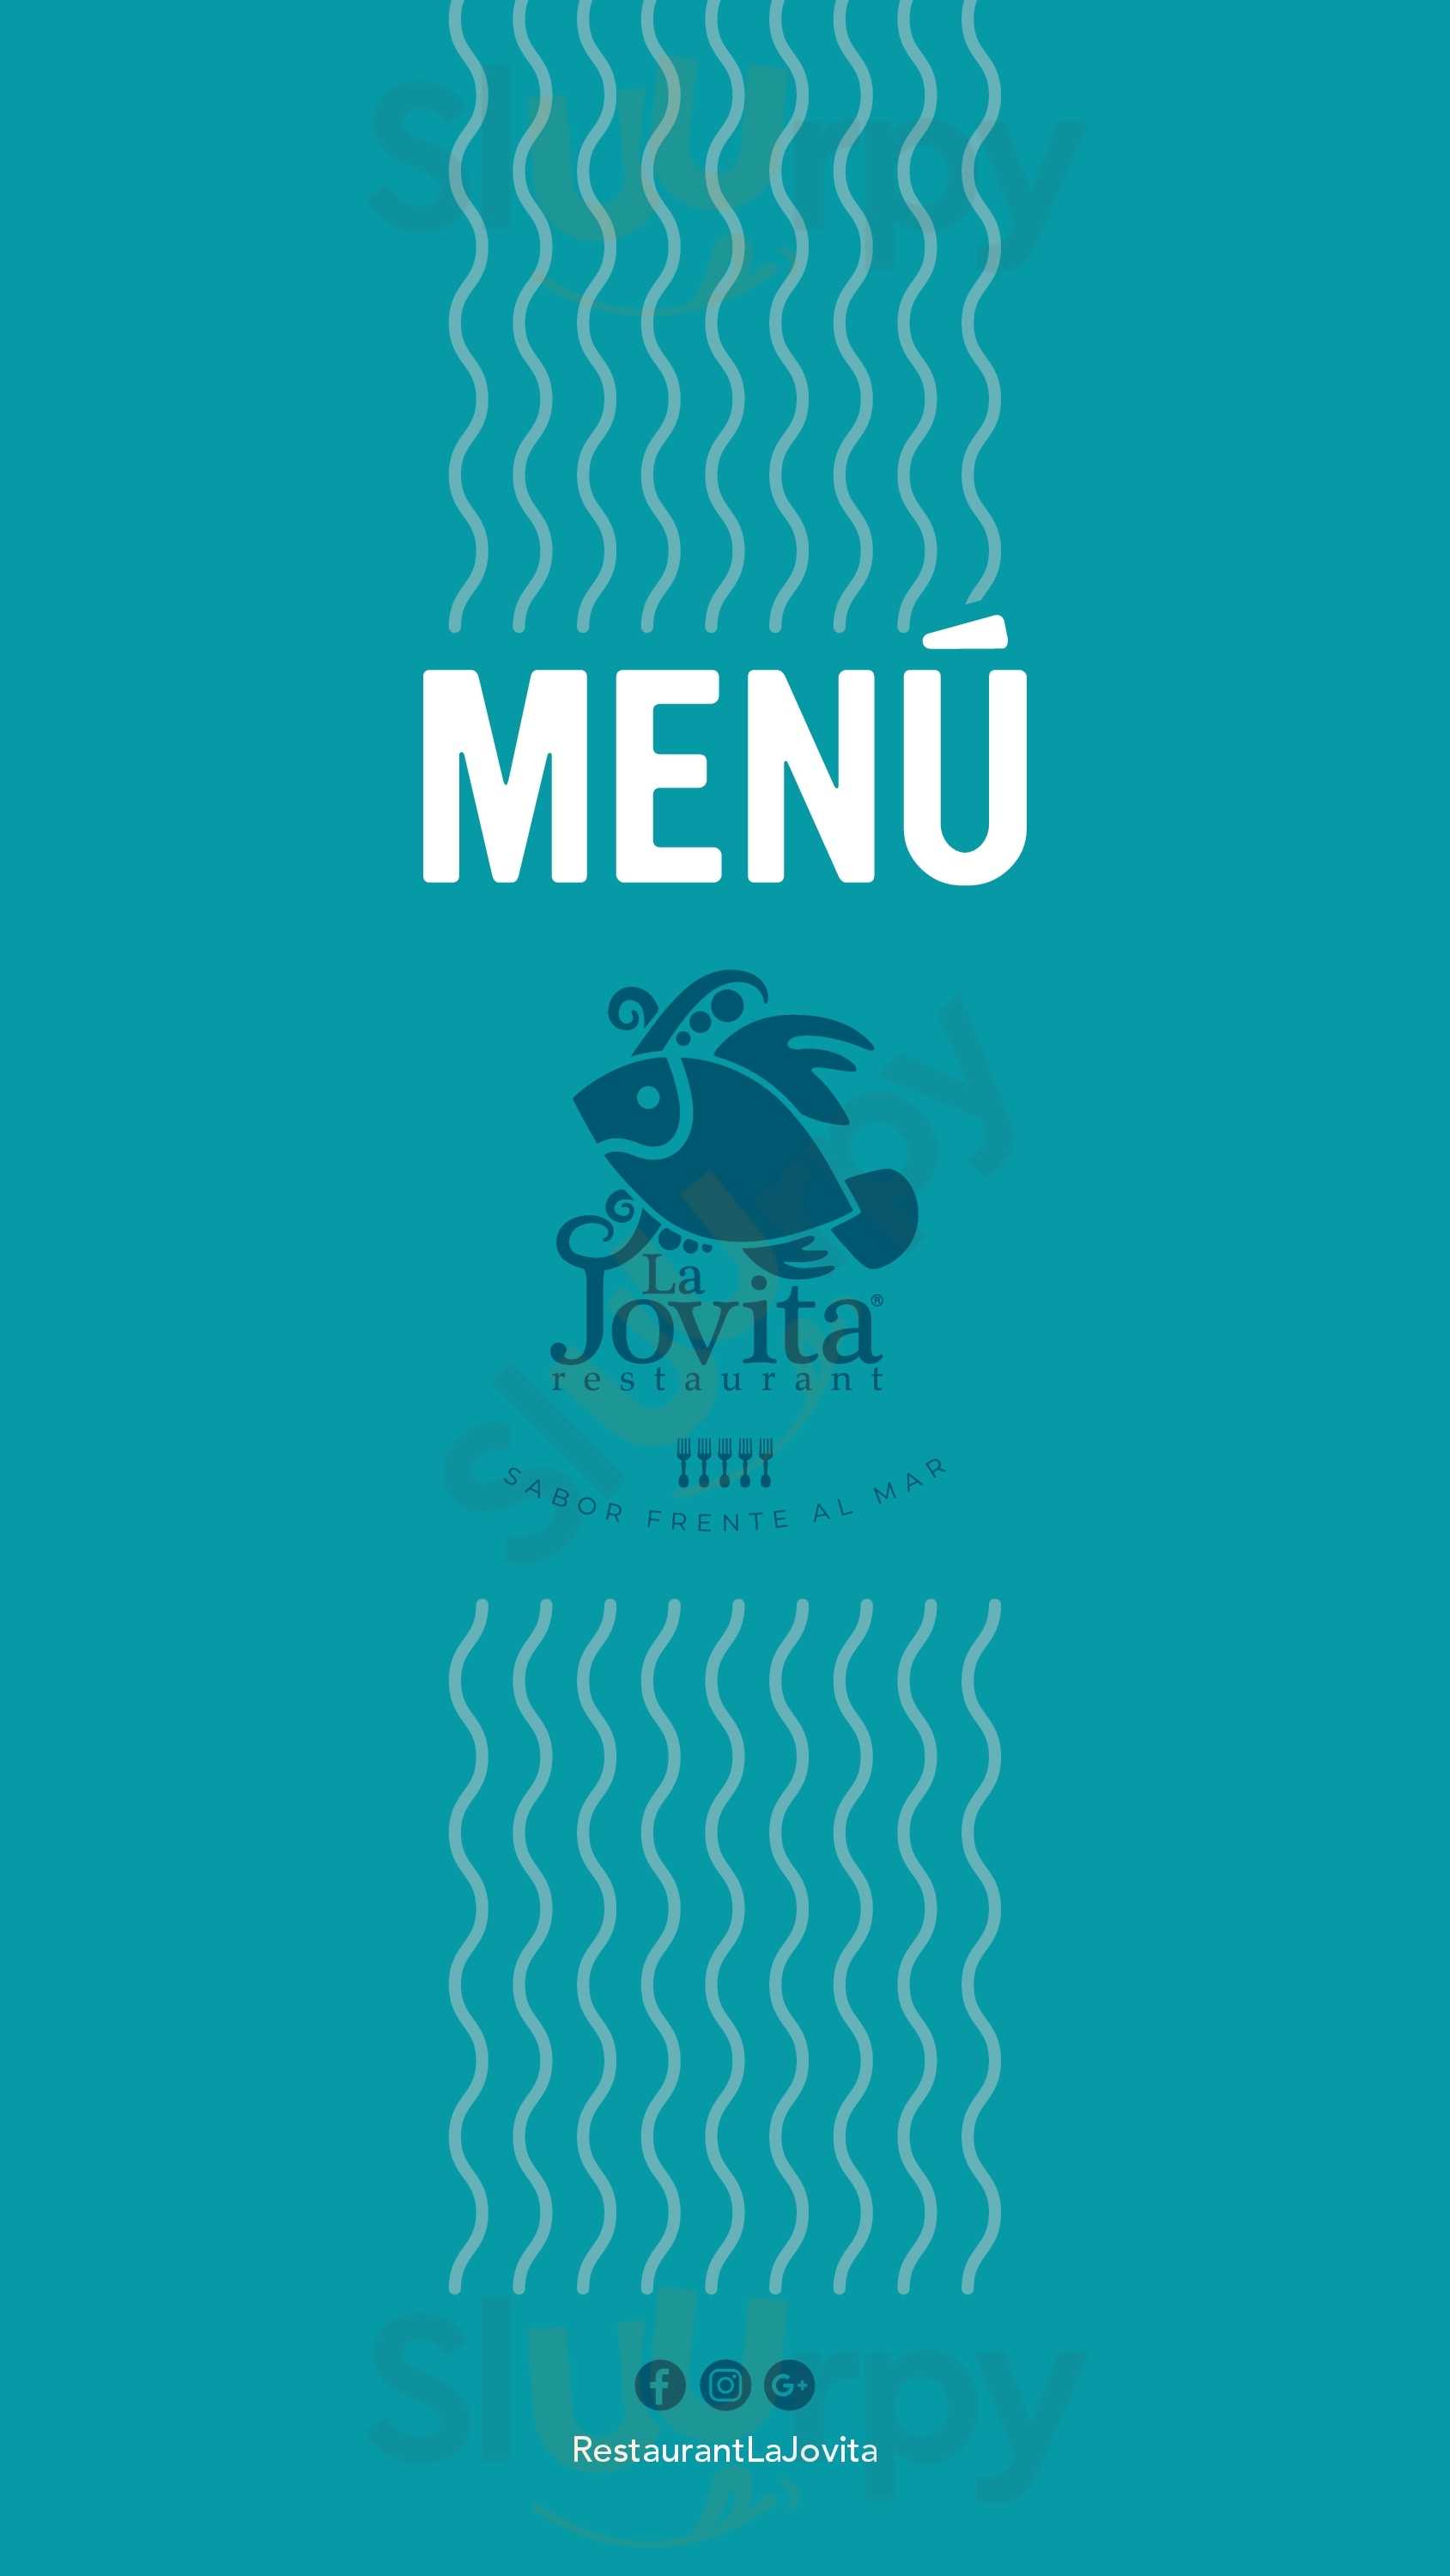 La Jovita Restaurant San Antonio Menu - 1